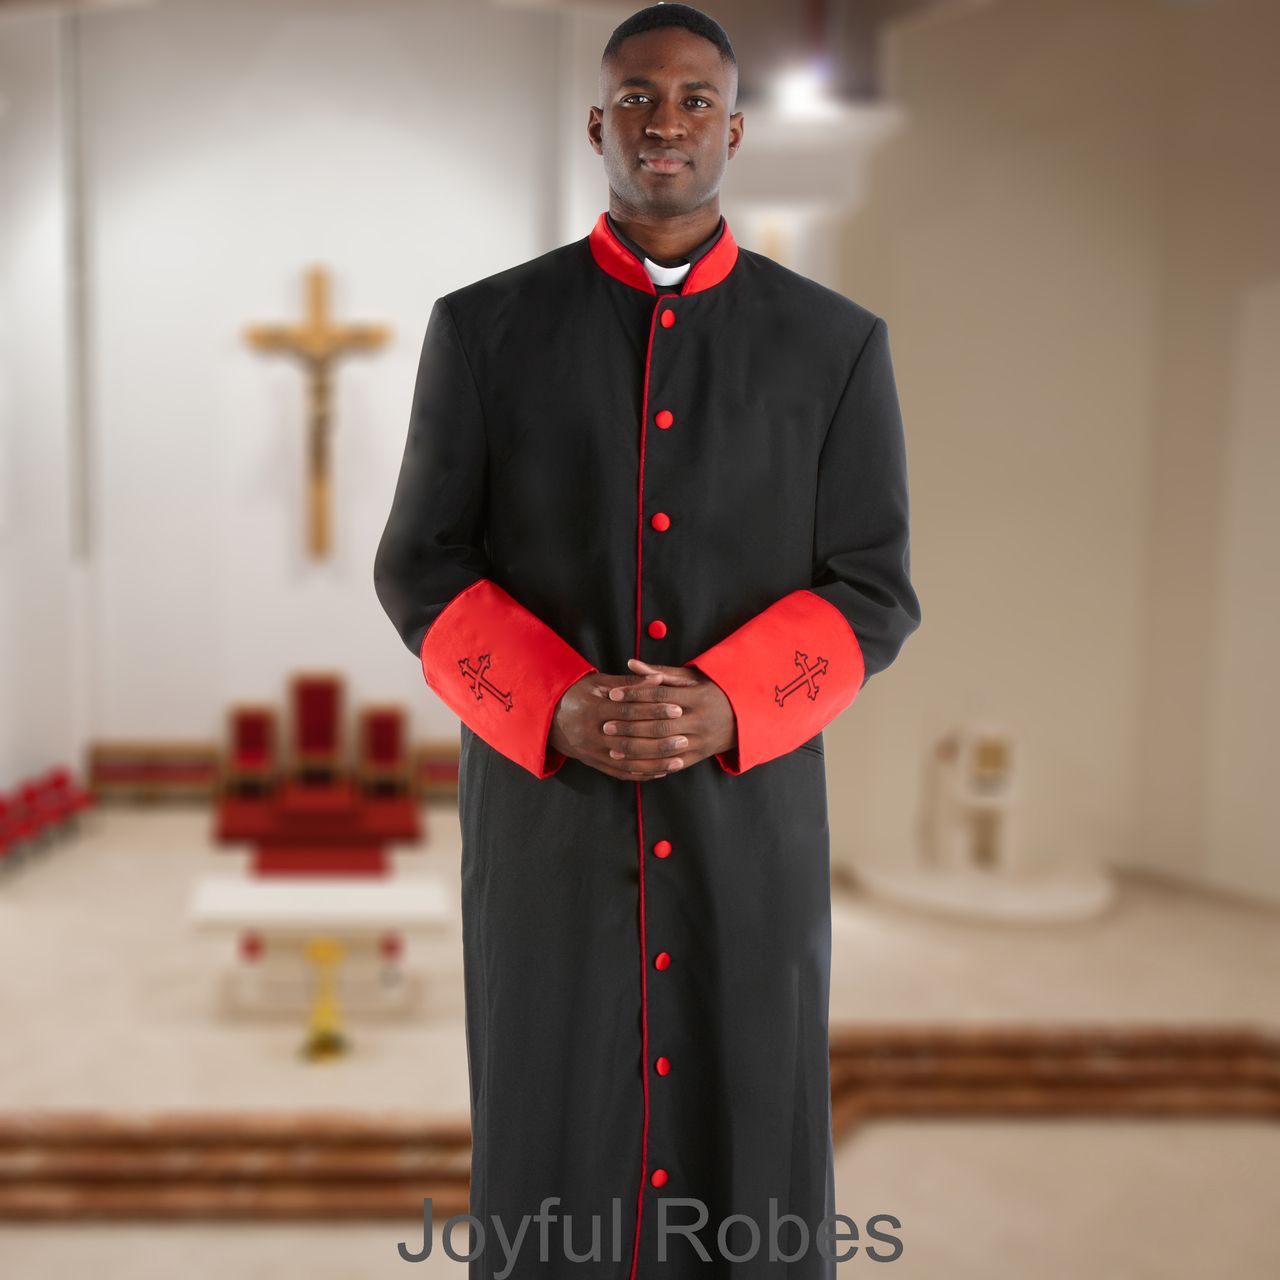 Men's Black/Red Clergy Robe for Pastors